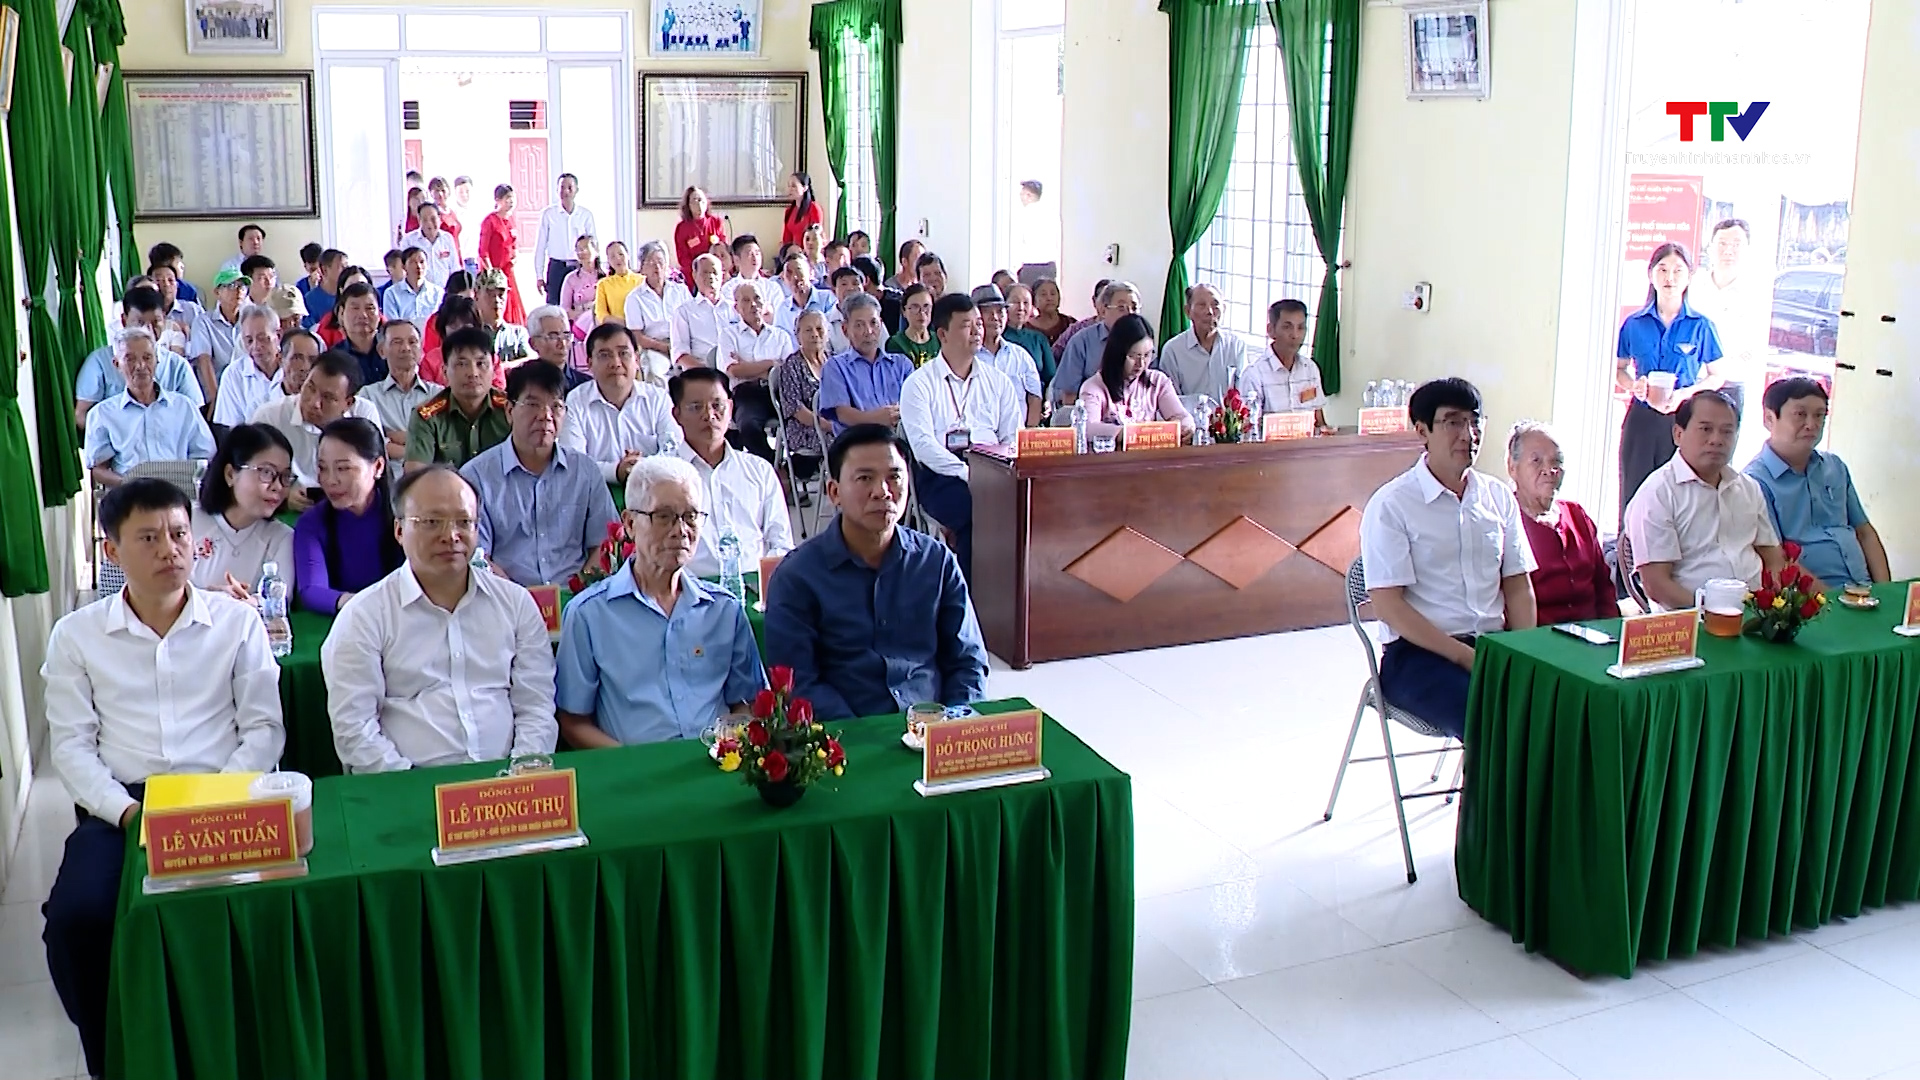 Bí thư Tỉnh ủy Đỗ Trọng Hưng dự hội nghị lấy ý kiến cử tri về việc nhập huyện Đông Sơn vào TP Thanh Hóa- Ảnh 2.